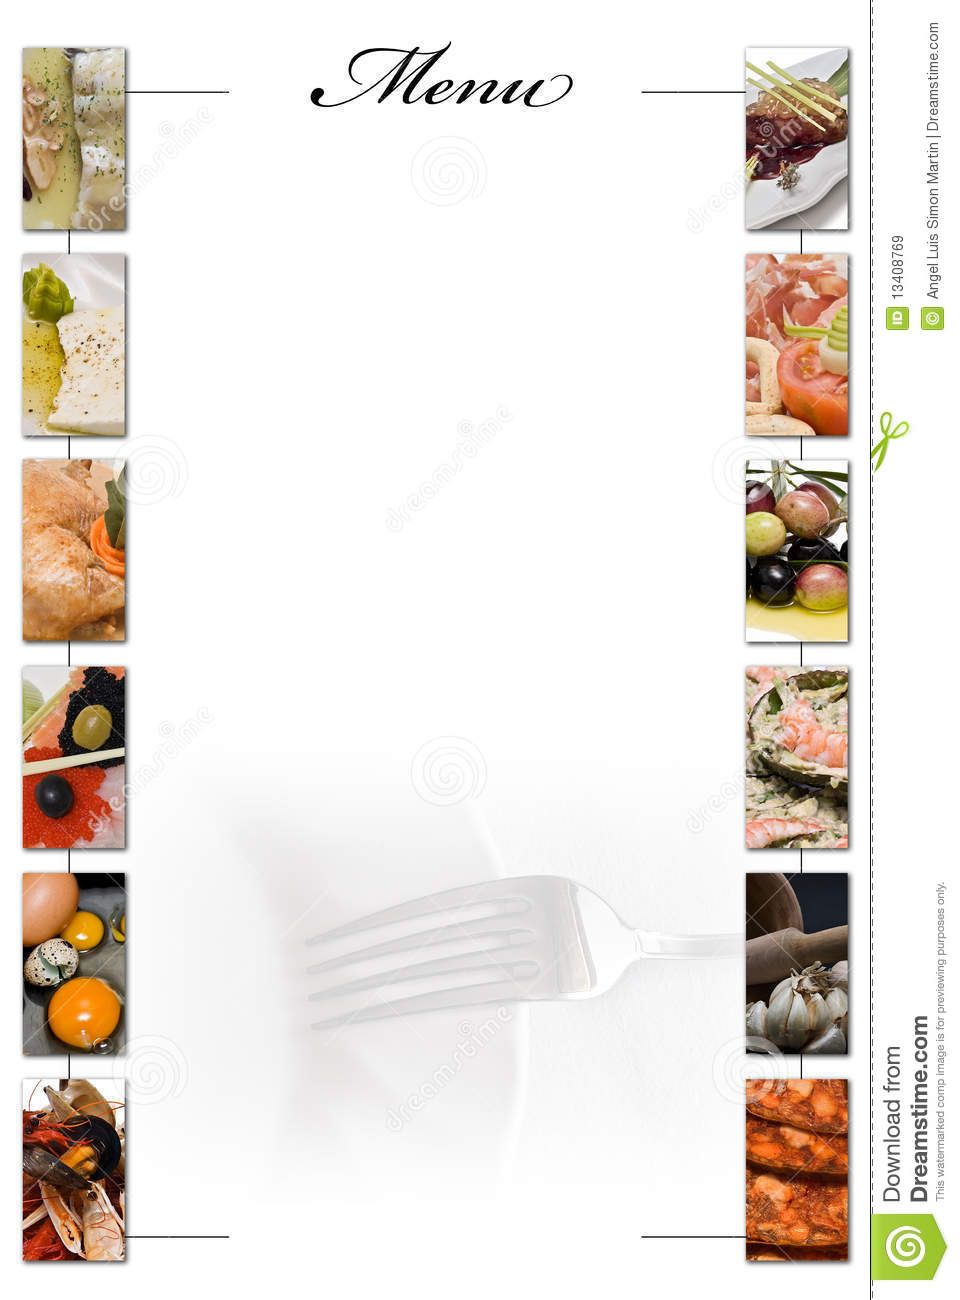 Menu Com O Espaço Em Branco A Escrever. Imagem de Stock - Imagem de cozido,  forquilha: 13408769 | Espaço em branco, Restaurantes, Branco - cardapio em branco